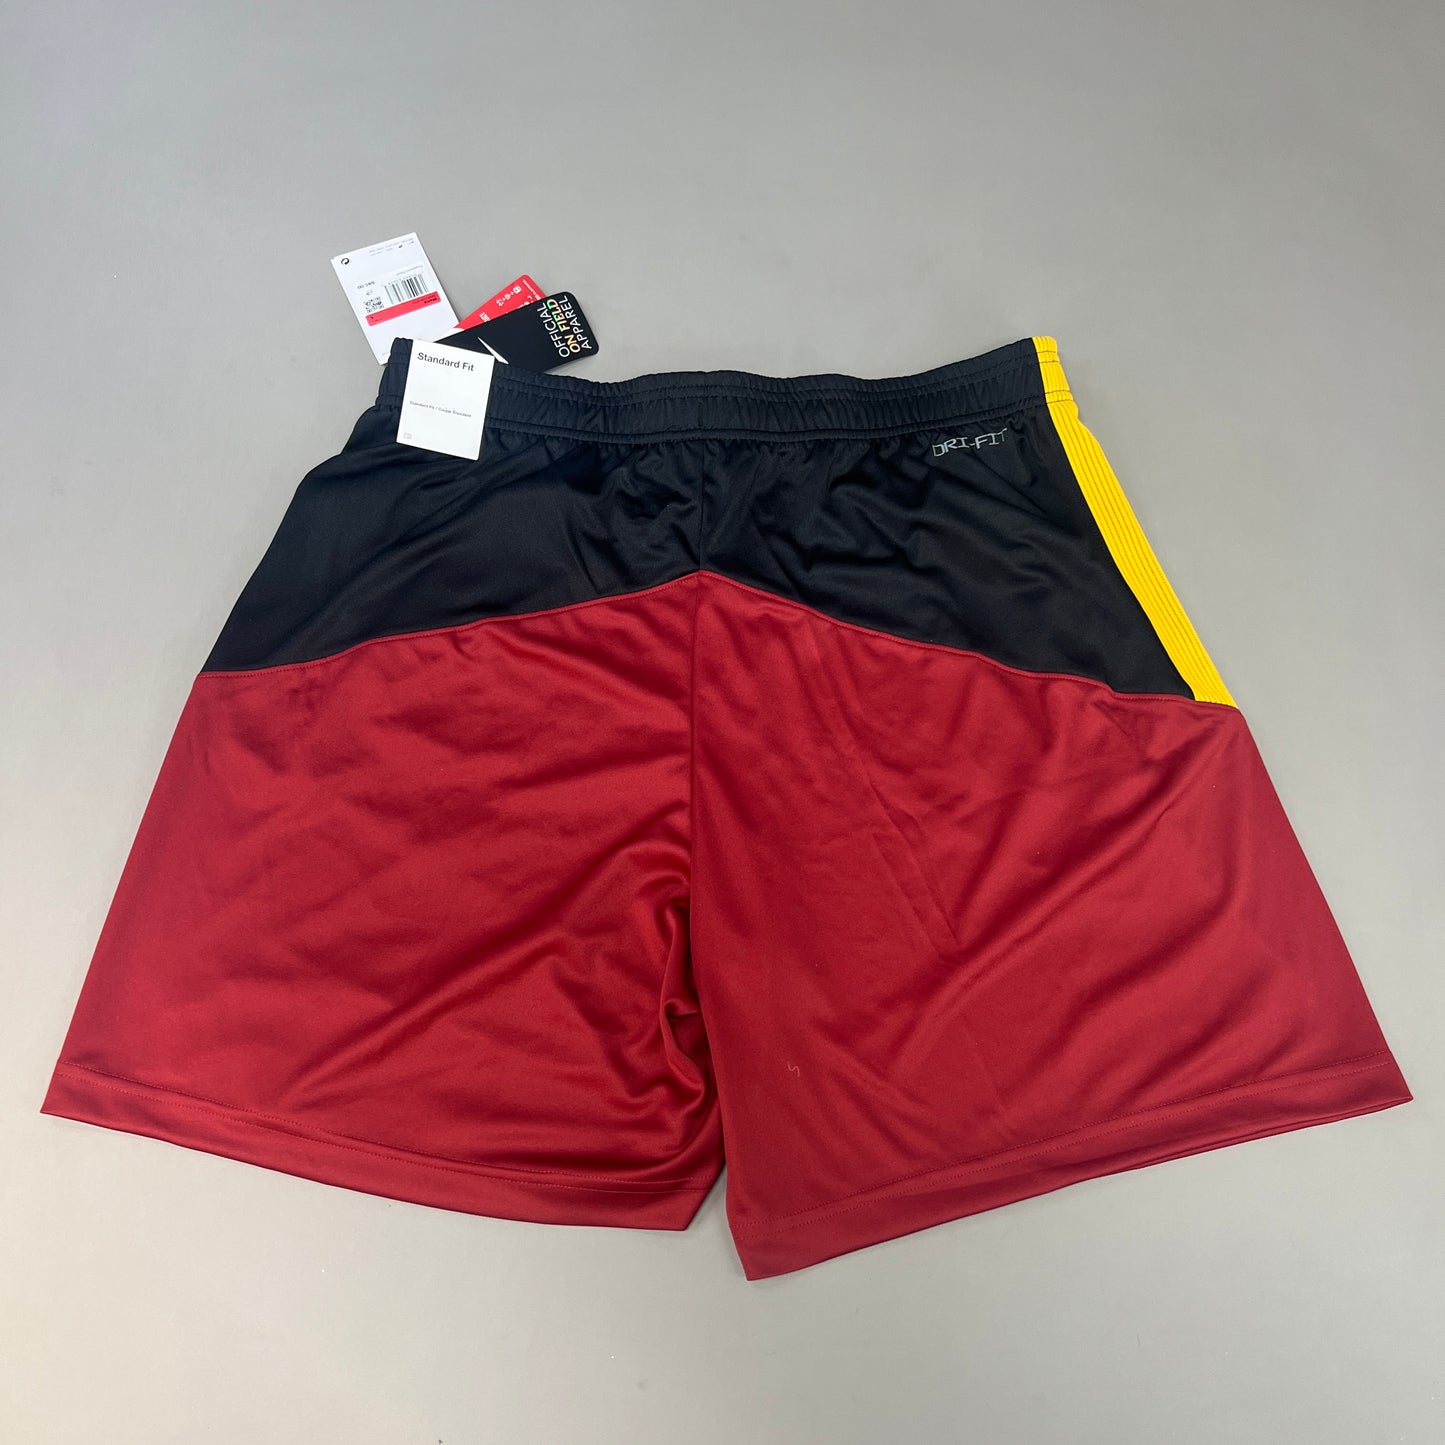 NIKE USC Trojans Logo Shorts Men's Sz L Black/Red Dri-Fit DN5732-010 (New)